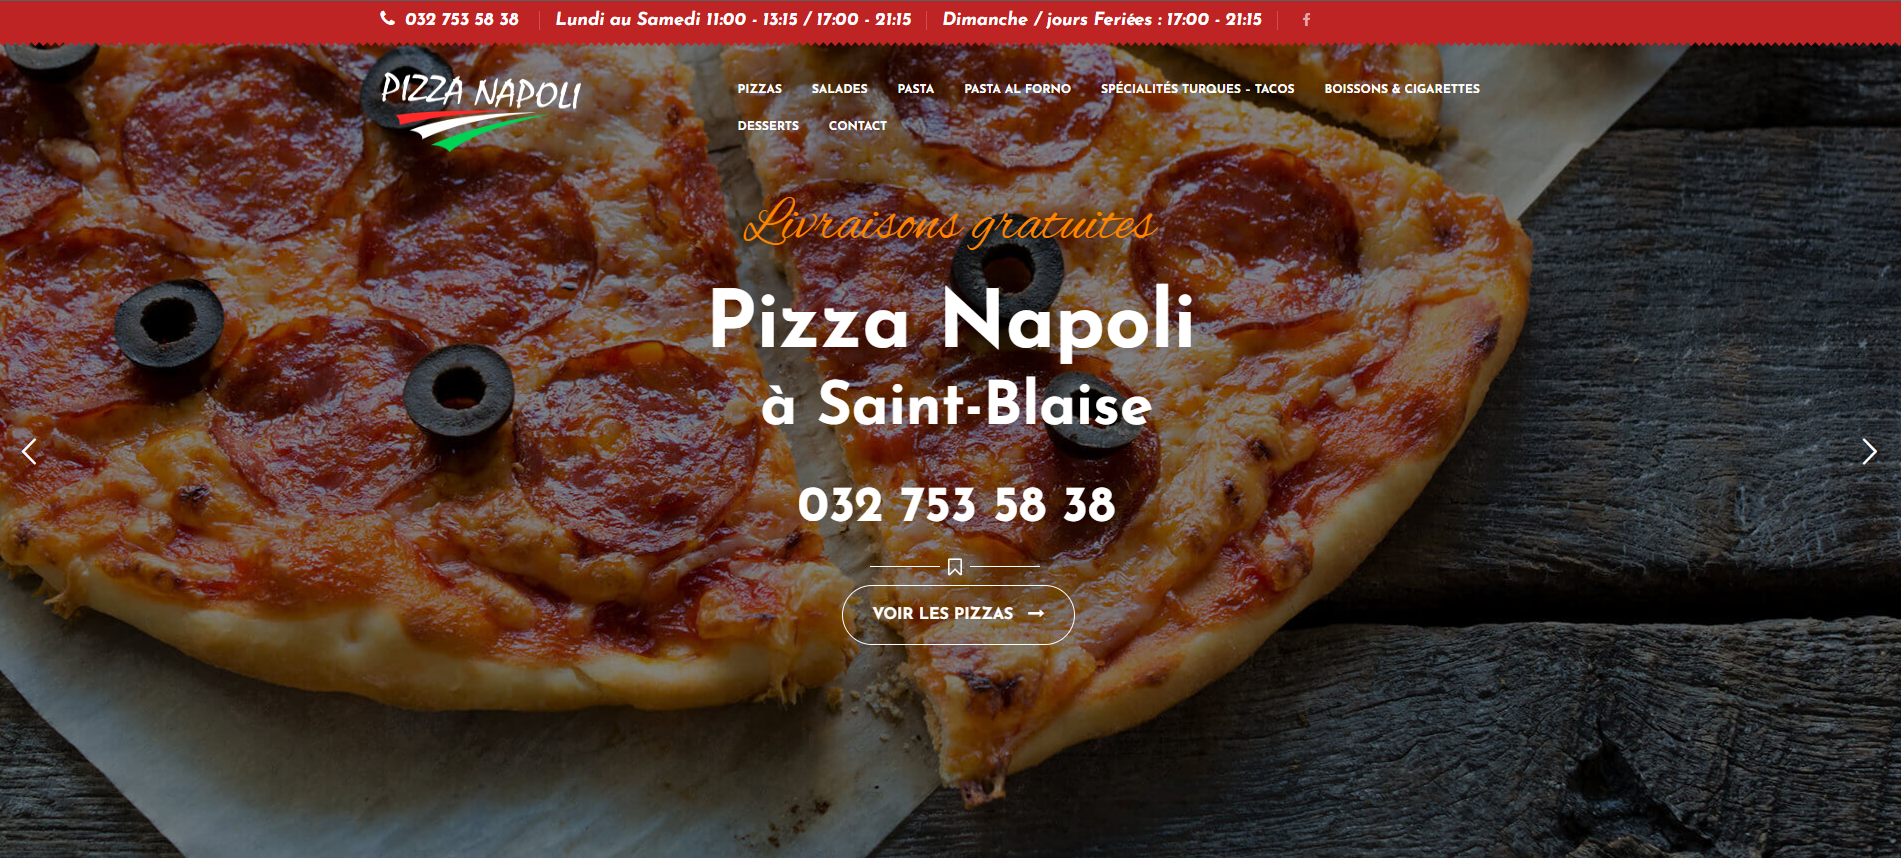 NapoliPizza Creation Site Web